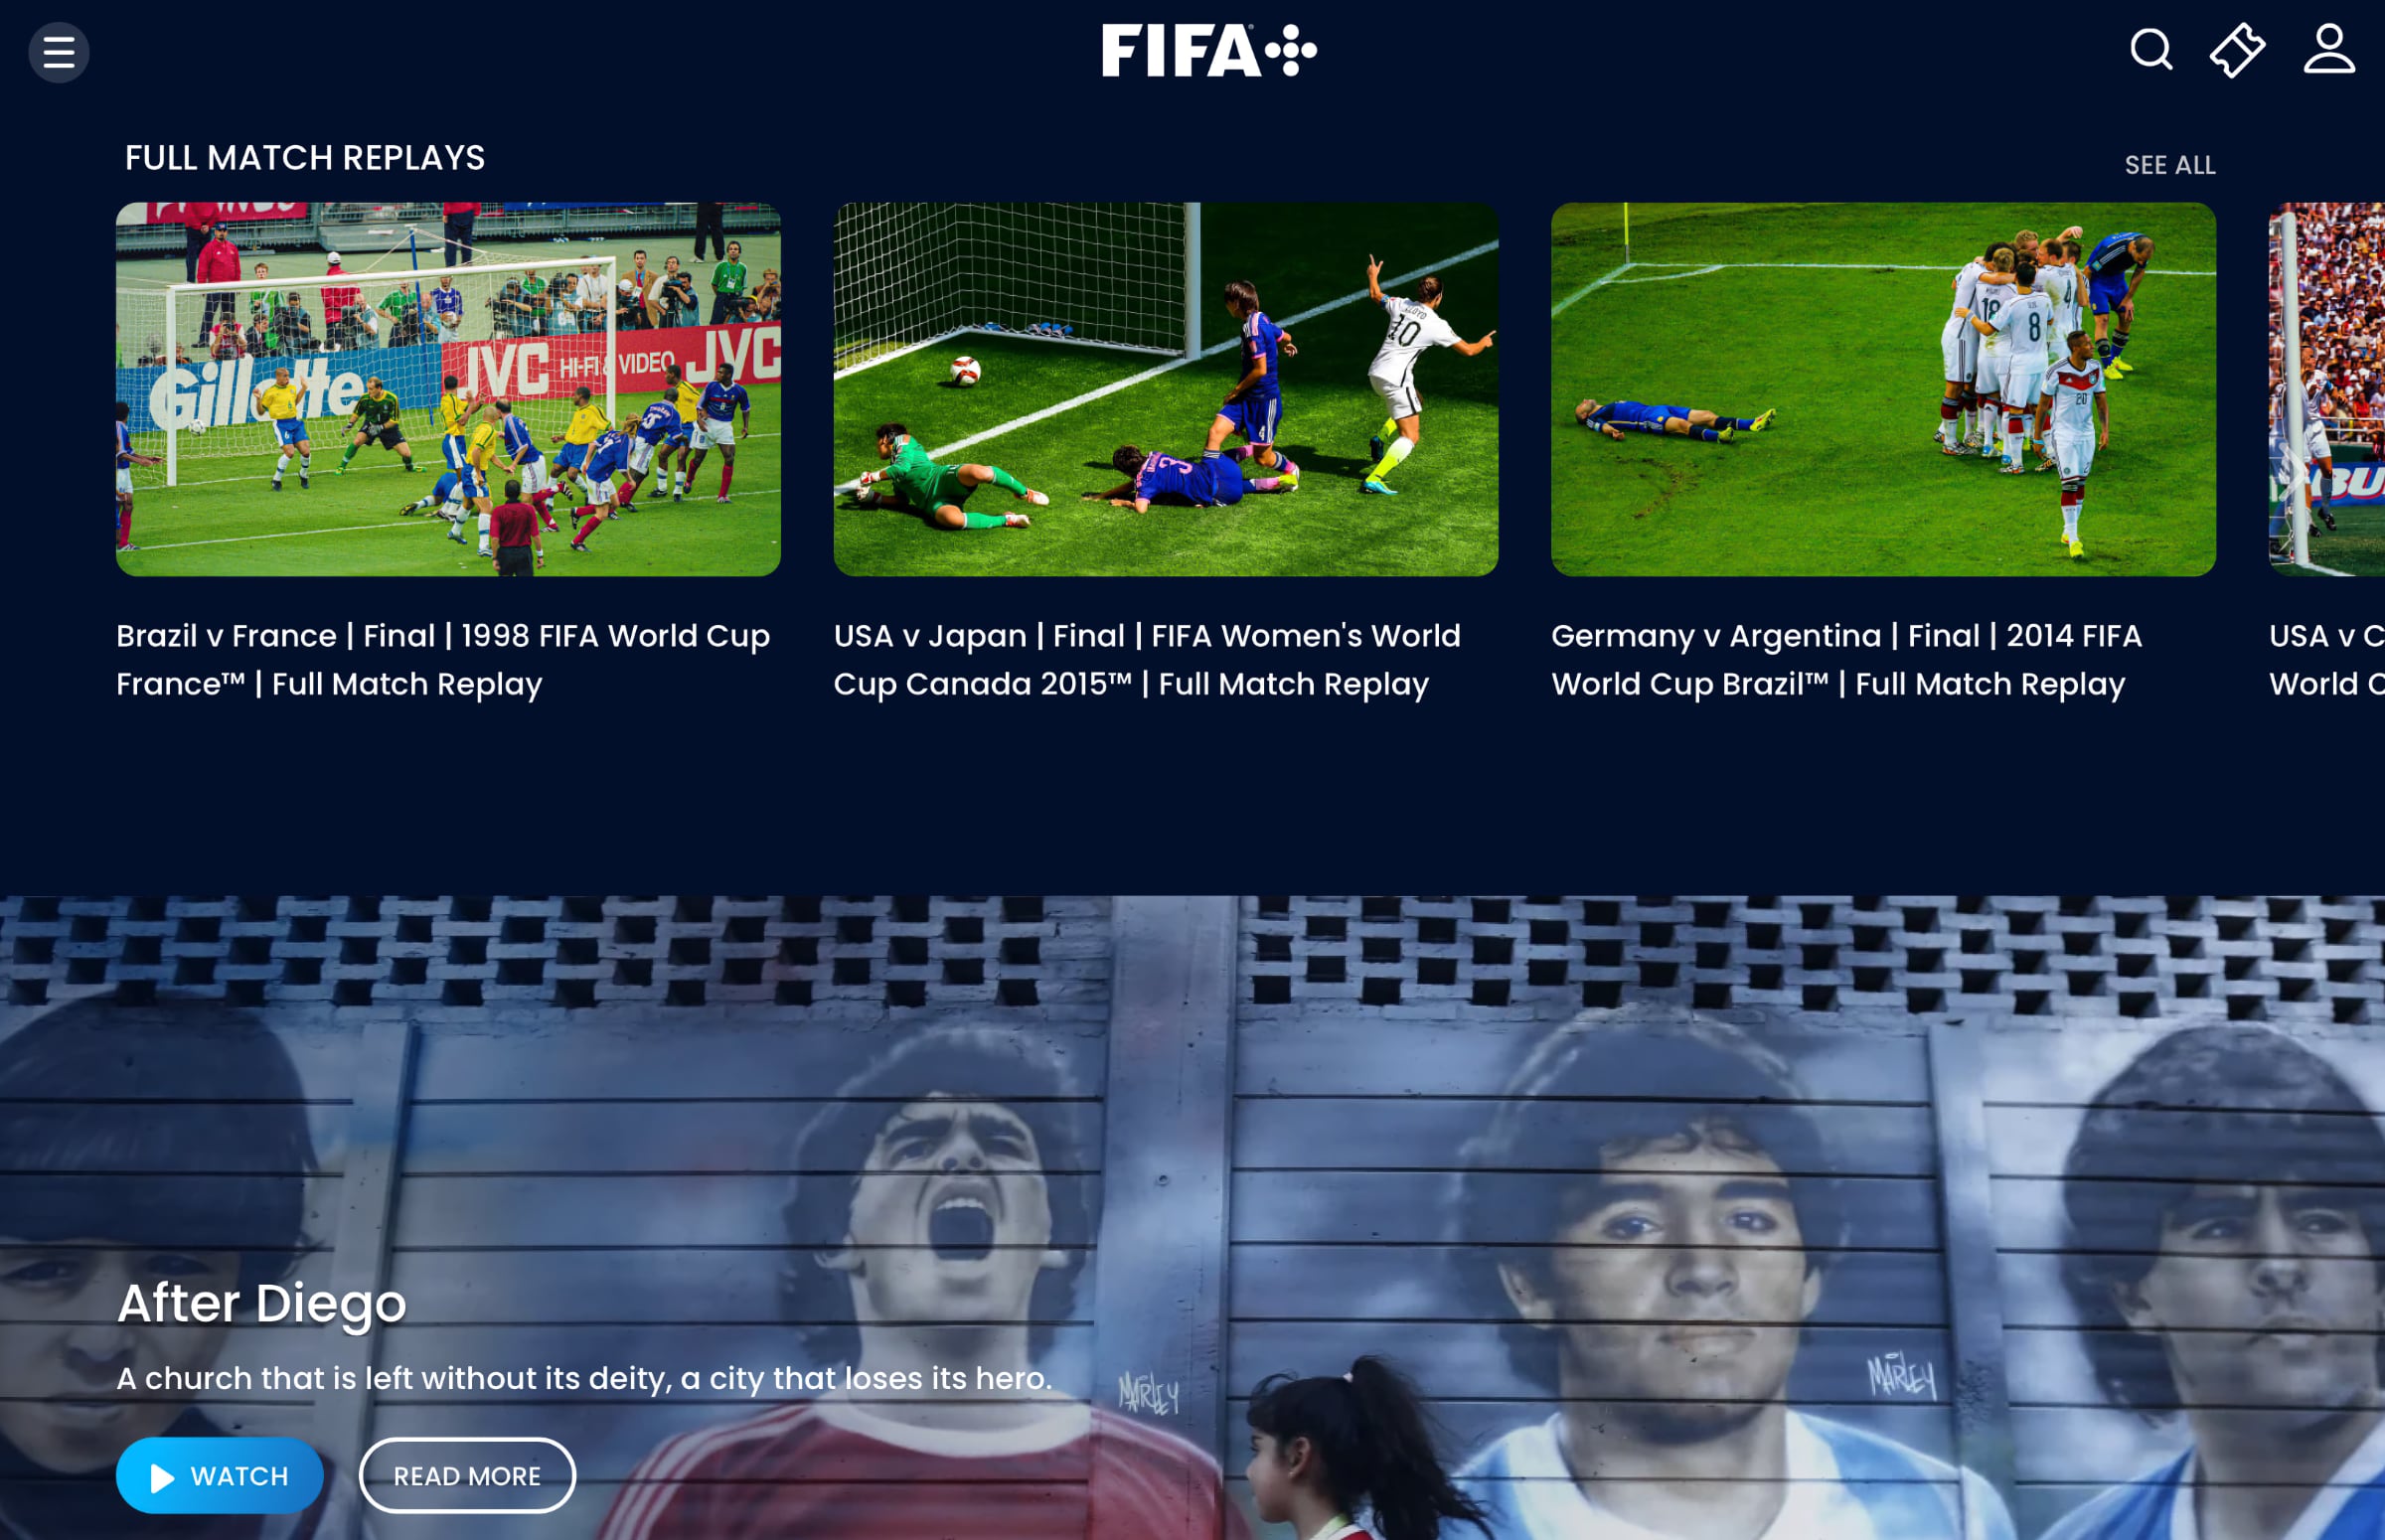 FIFA+ app now available on FireTV, LG webOS, Samsung Tizen - FlatpanelsHD